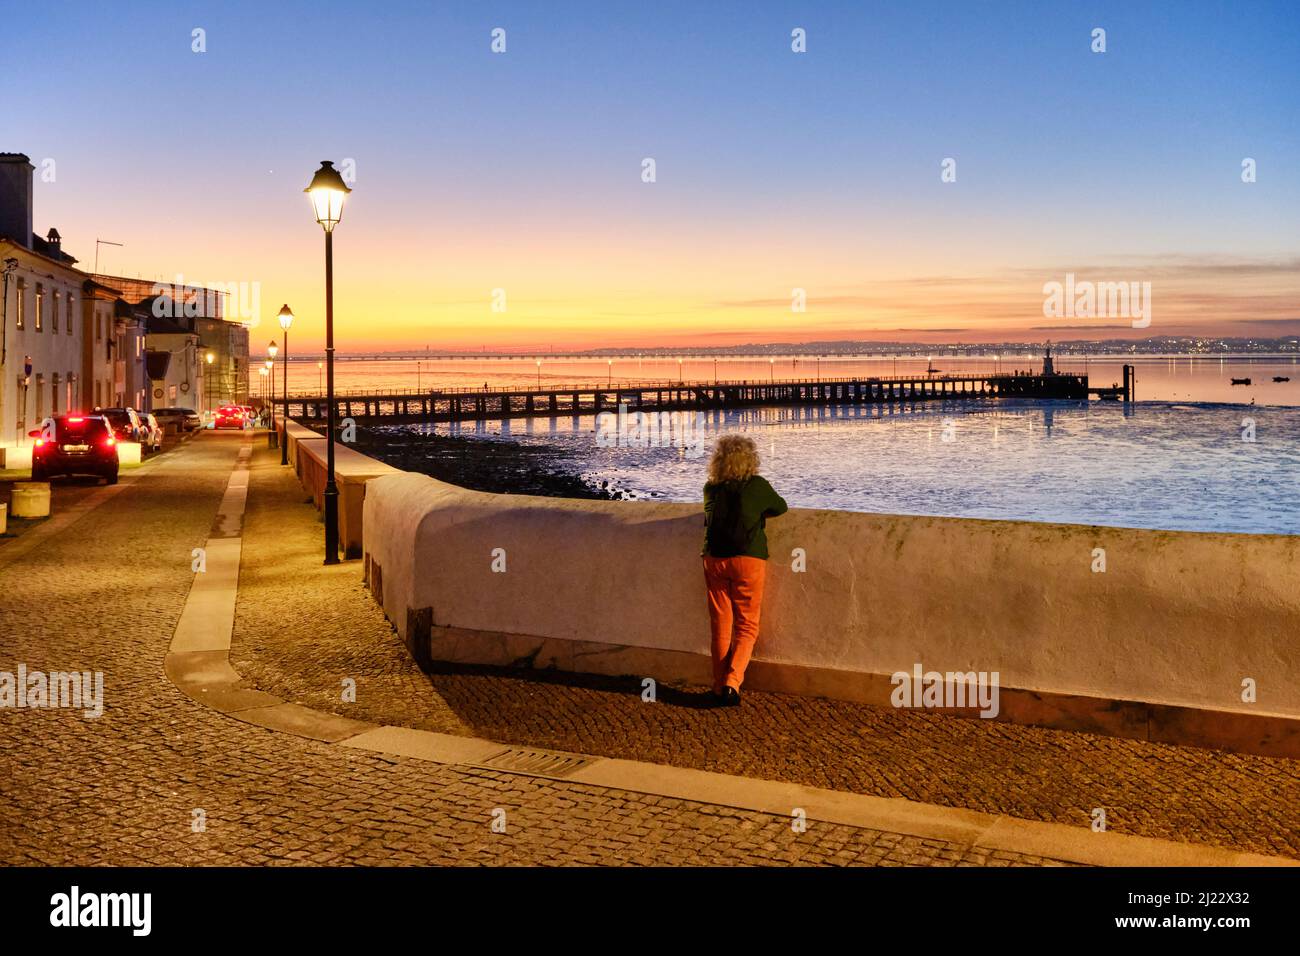 Das traditionelle Fischerdorf Alcochete, das sich entlang des Flusses Tejo erstreckt und gegenüber Lissabon liegt. Portugal Stockfoto